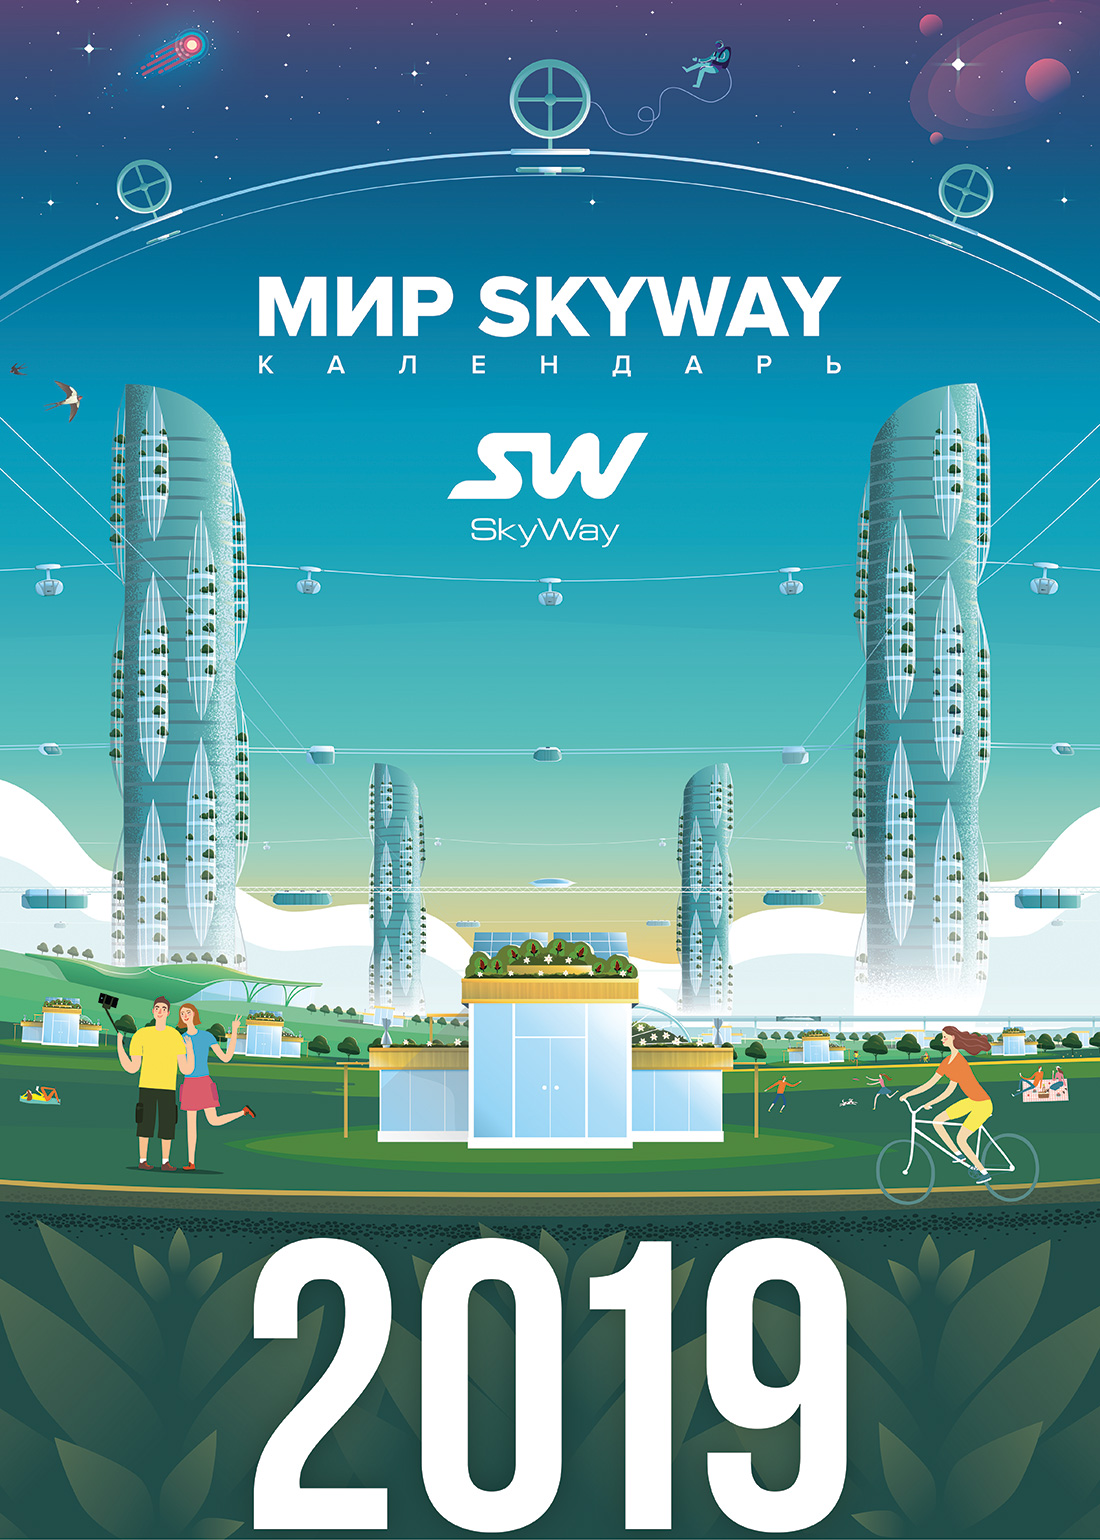 The SkyWay calendar for 2019